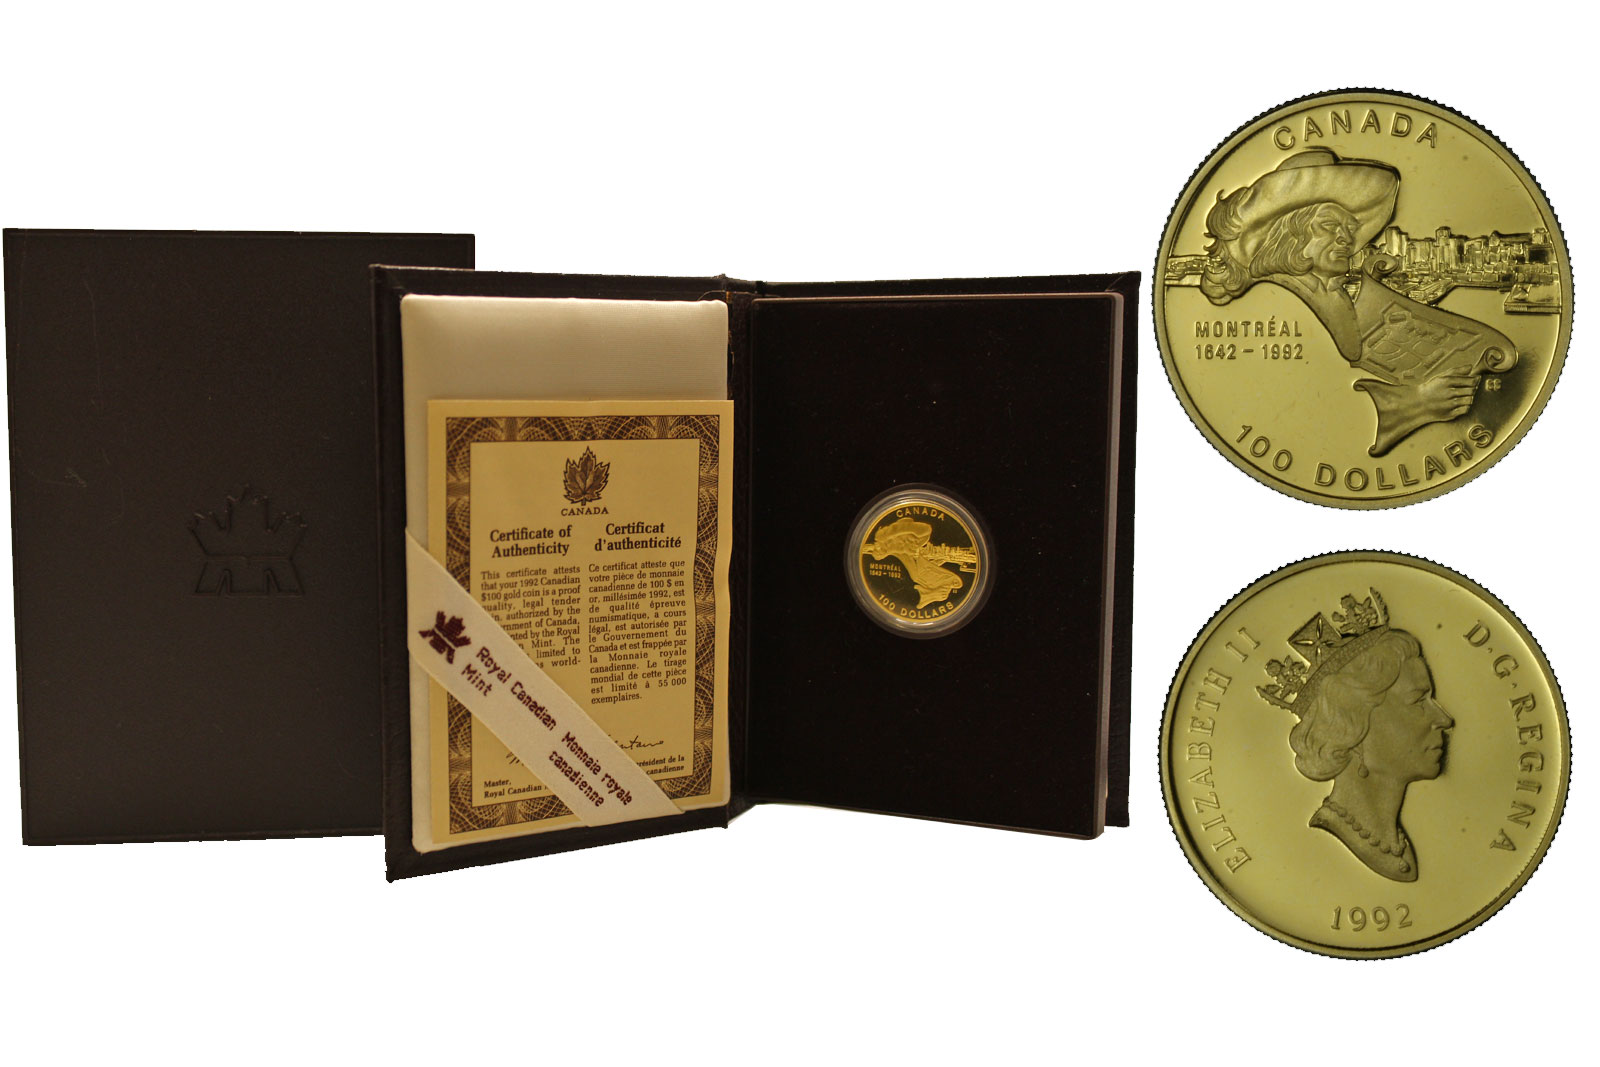 "Montreal" - 100 dollari gr. 13,33 in oro 583/000 - conf. originale